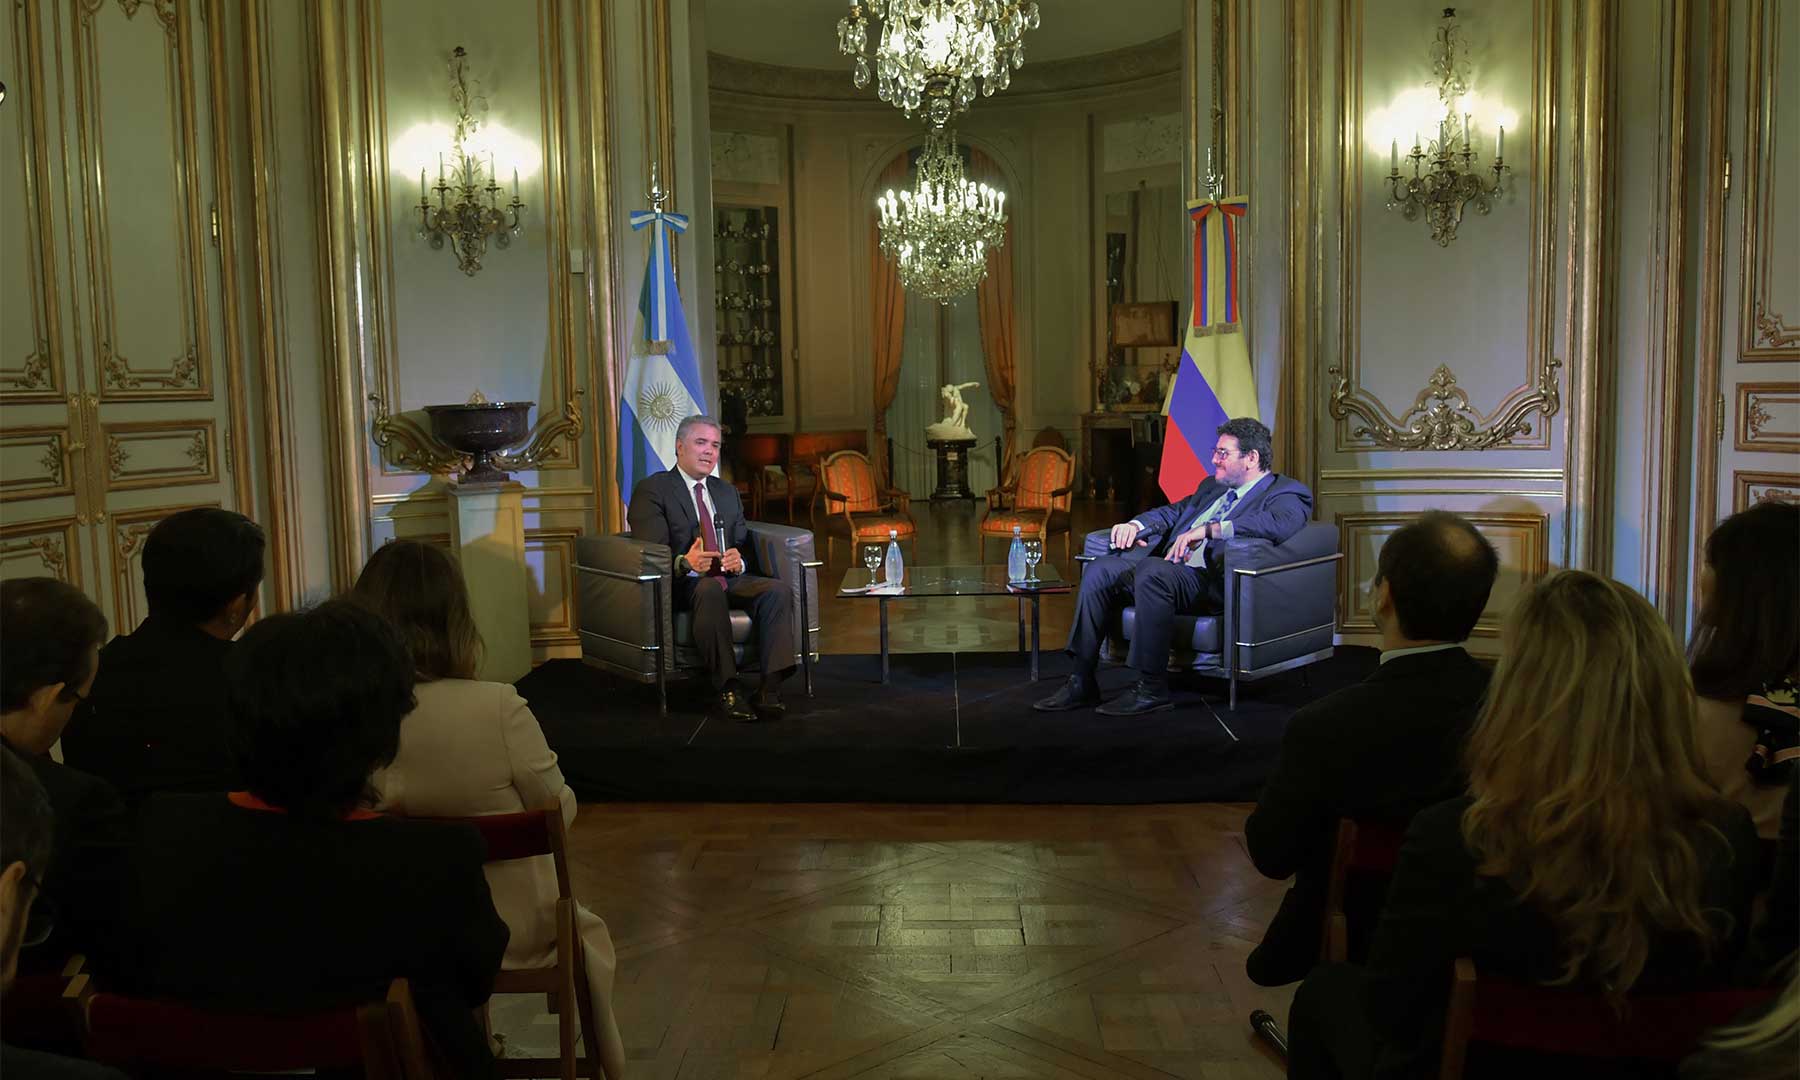 El Presidente Iván Duque participó en conversatorio sobre Economía Naranja en el Museo de Arte Decorativo 